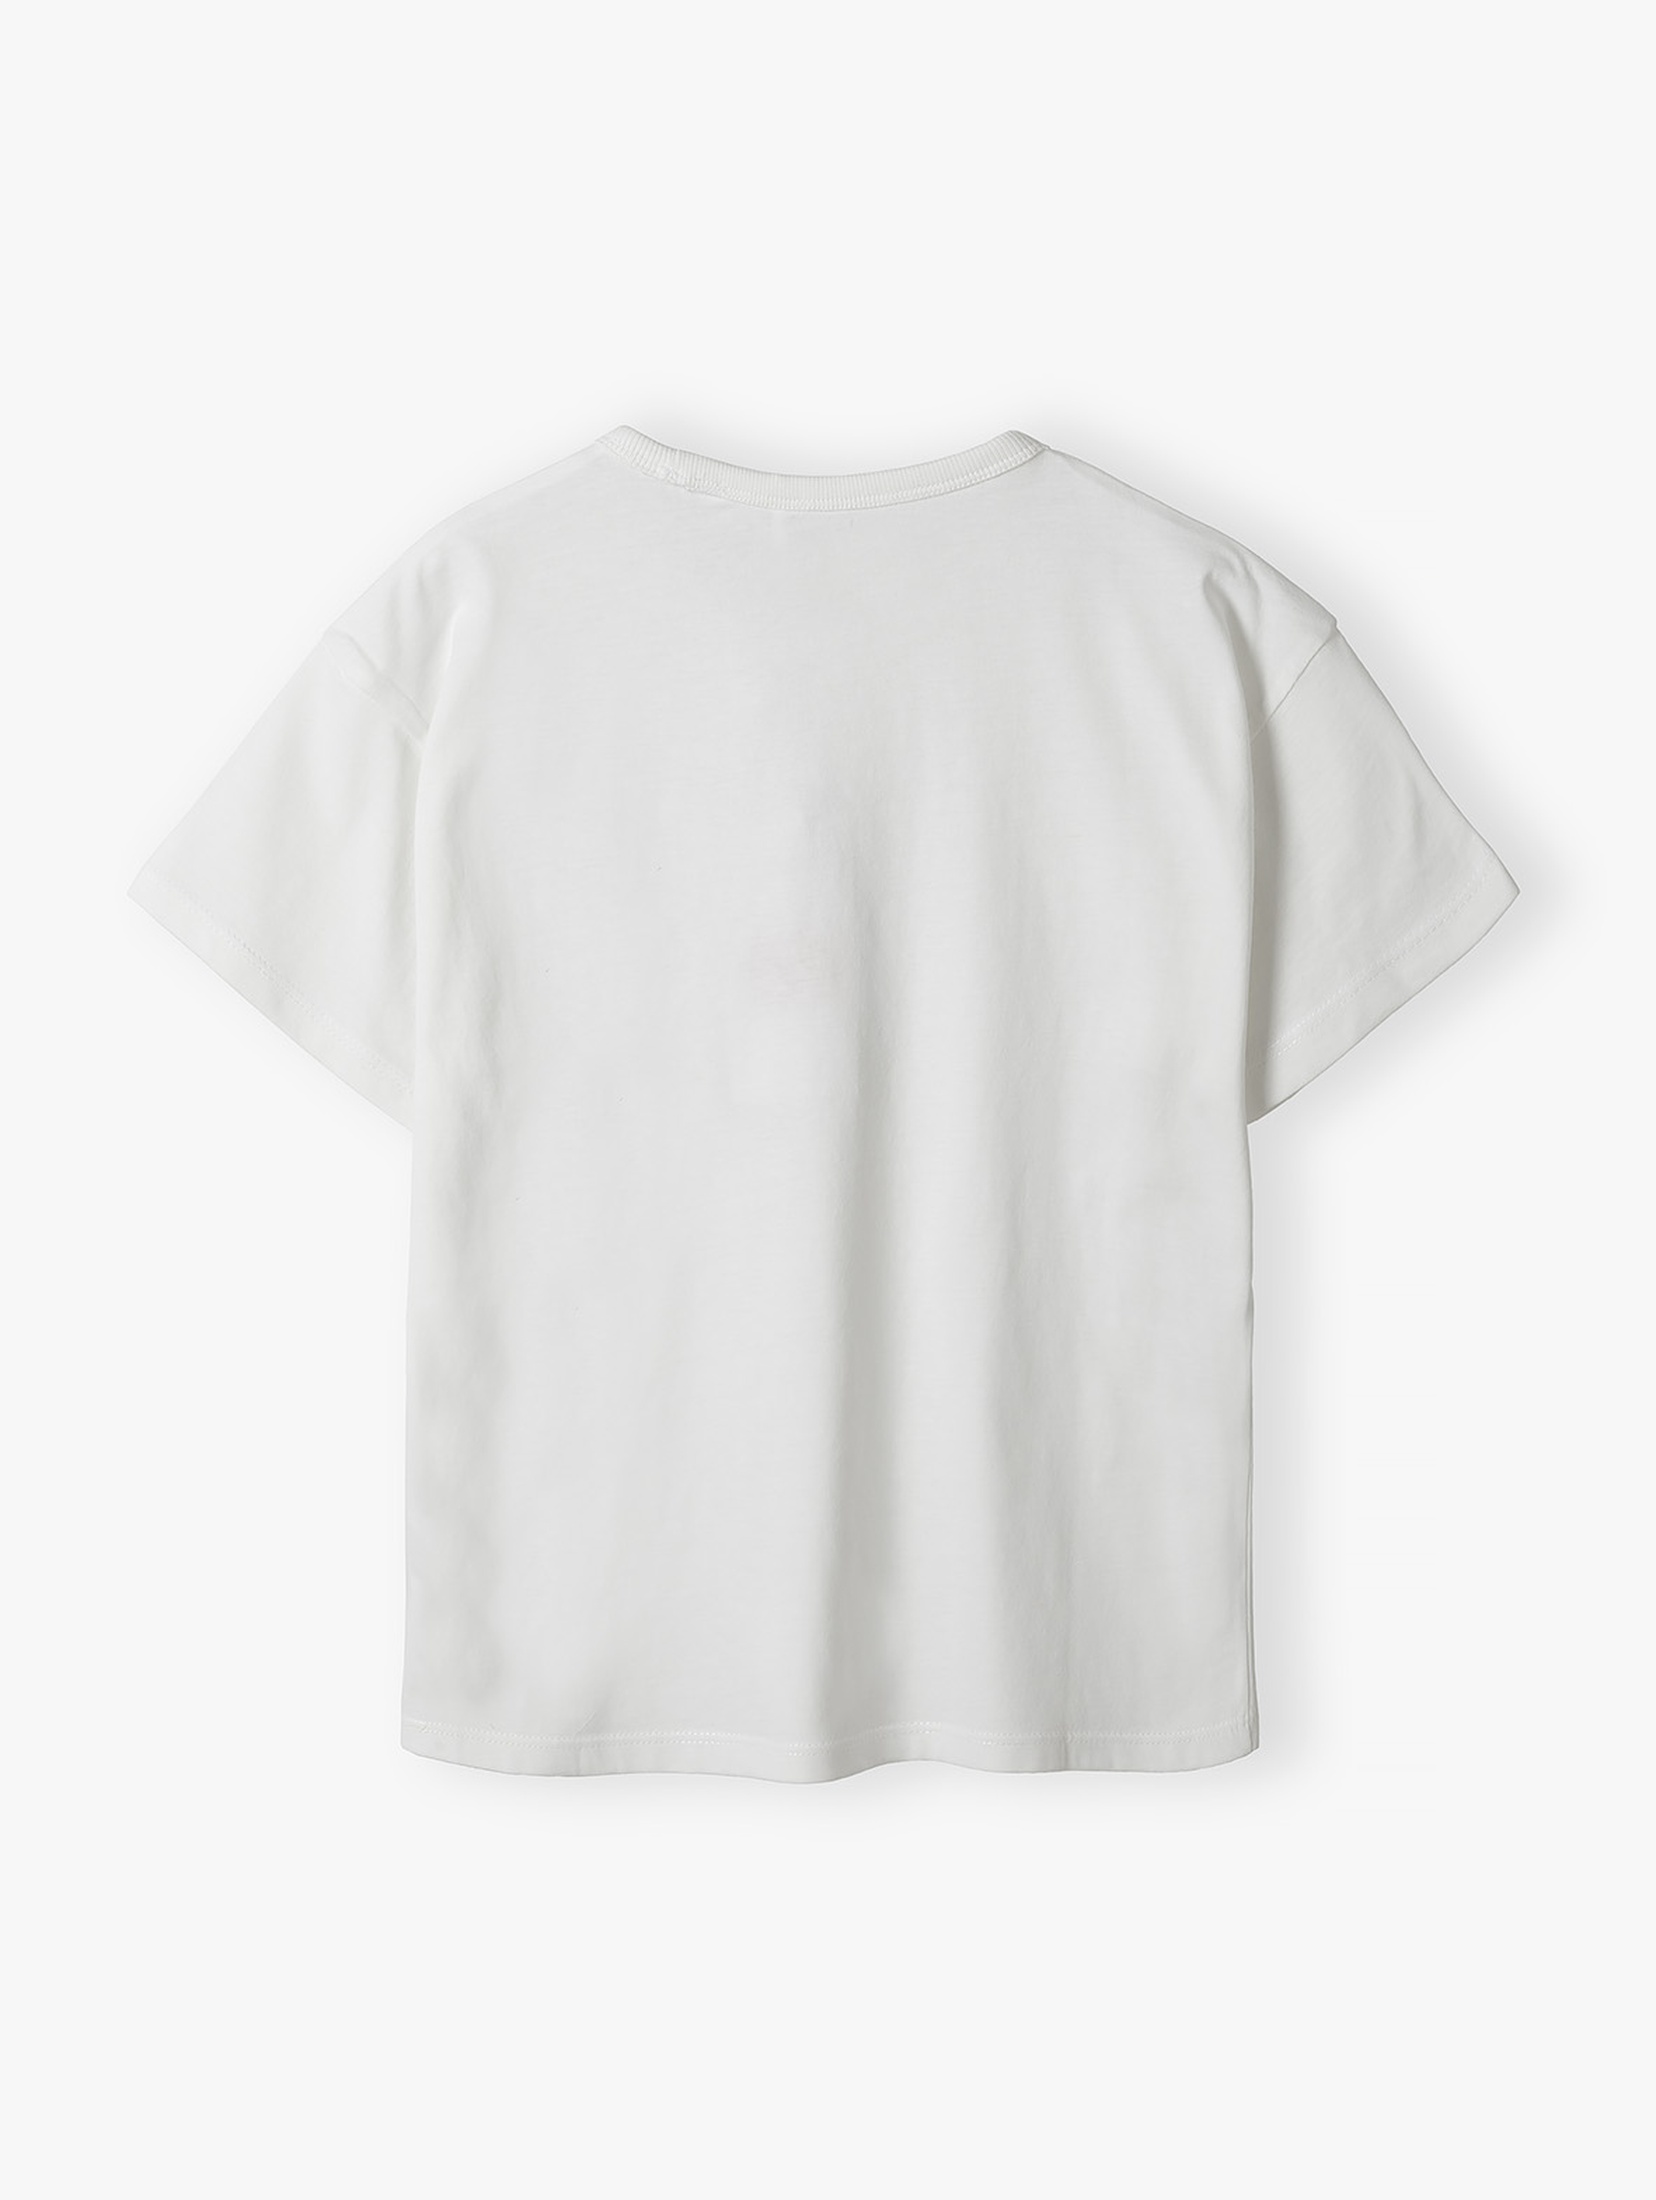 Pudełkowy biały t-shirt dla dziewczynki - Lincoln&Sharks